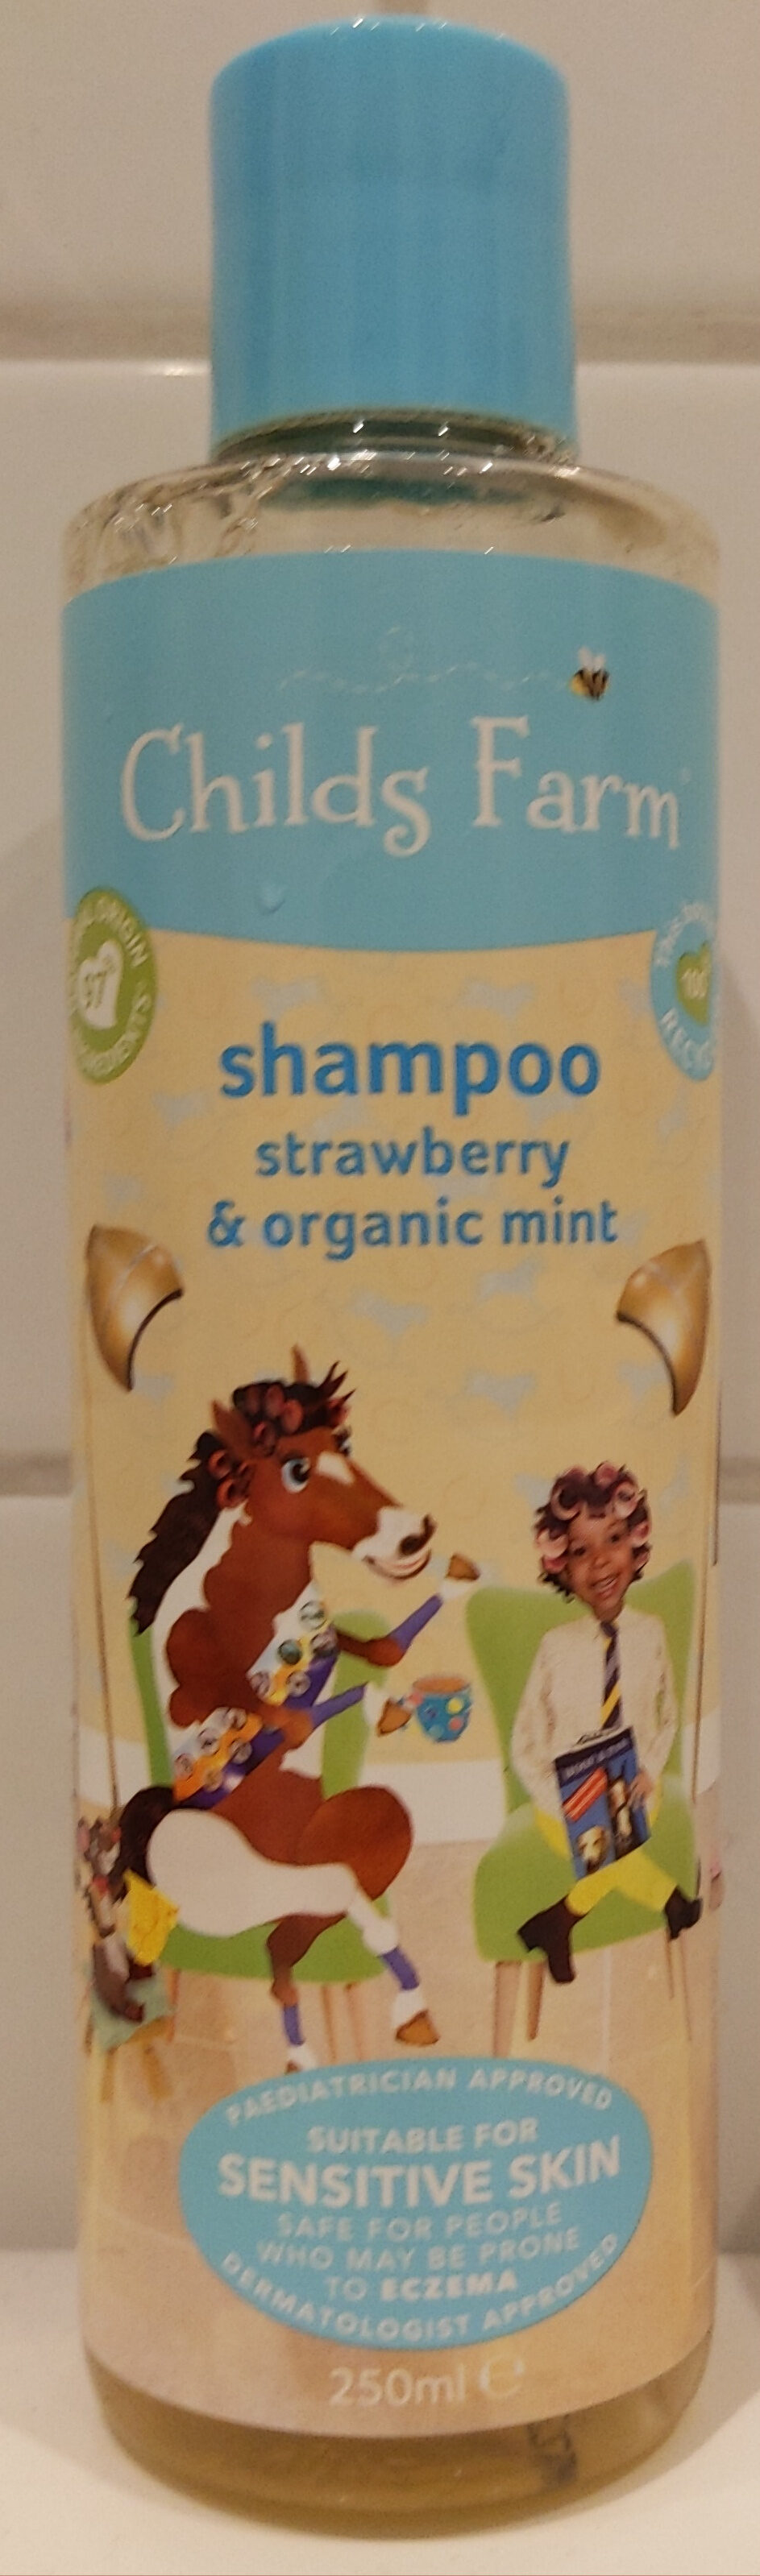 Strawberry and organic mint shampoo - Продукт - en